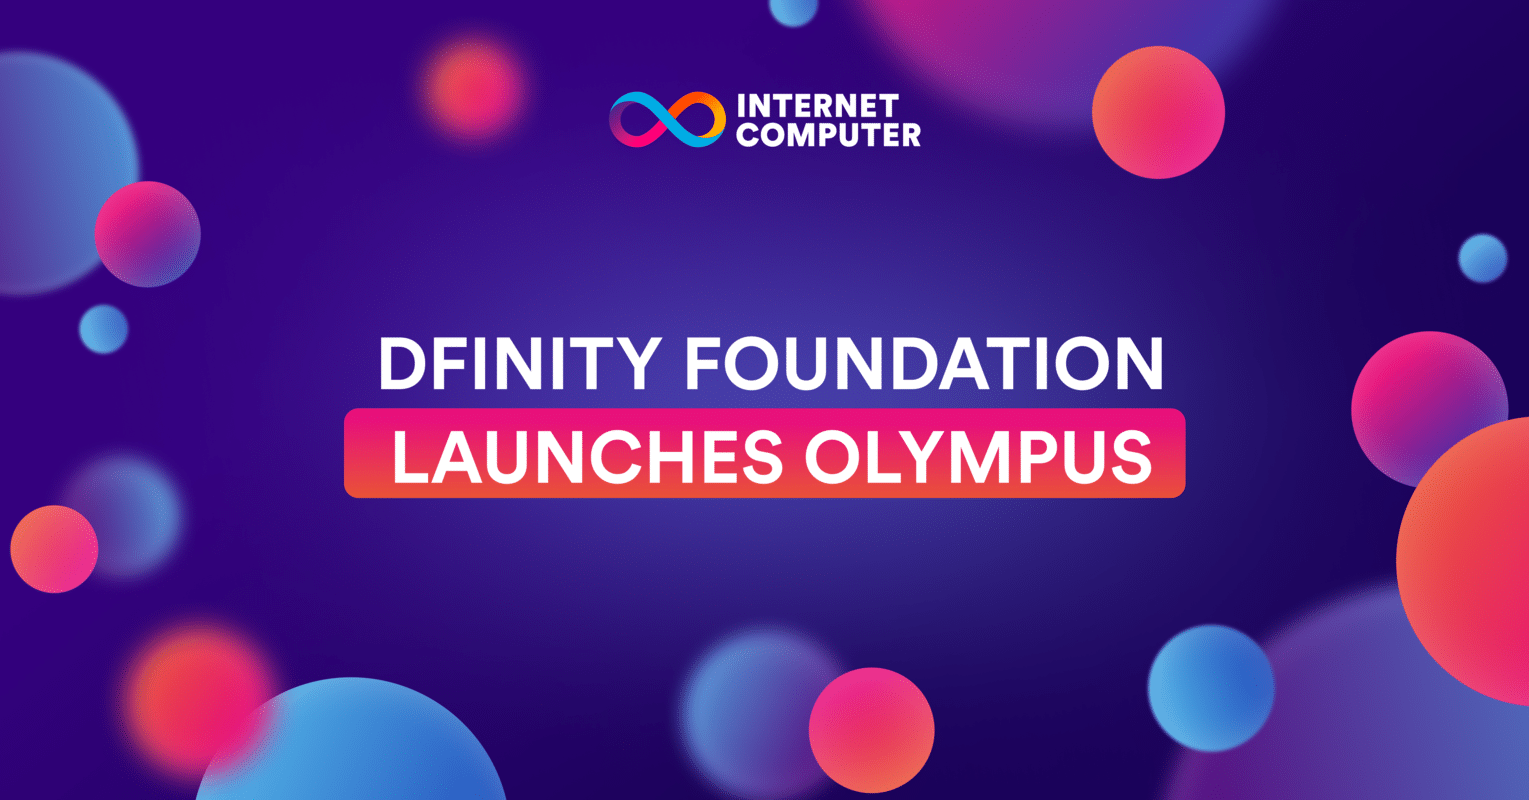 La Fondation DFINITY lance Olympus, une plateforme d'accélération mondiale décentralisée sur l'Internet Computer